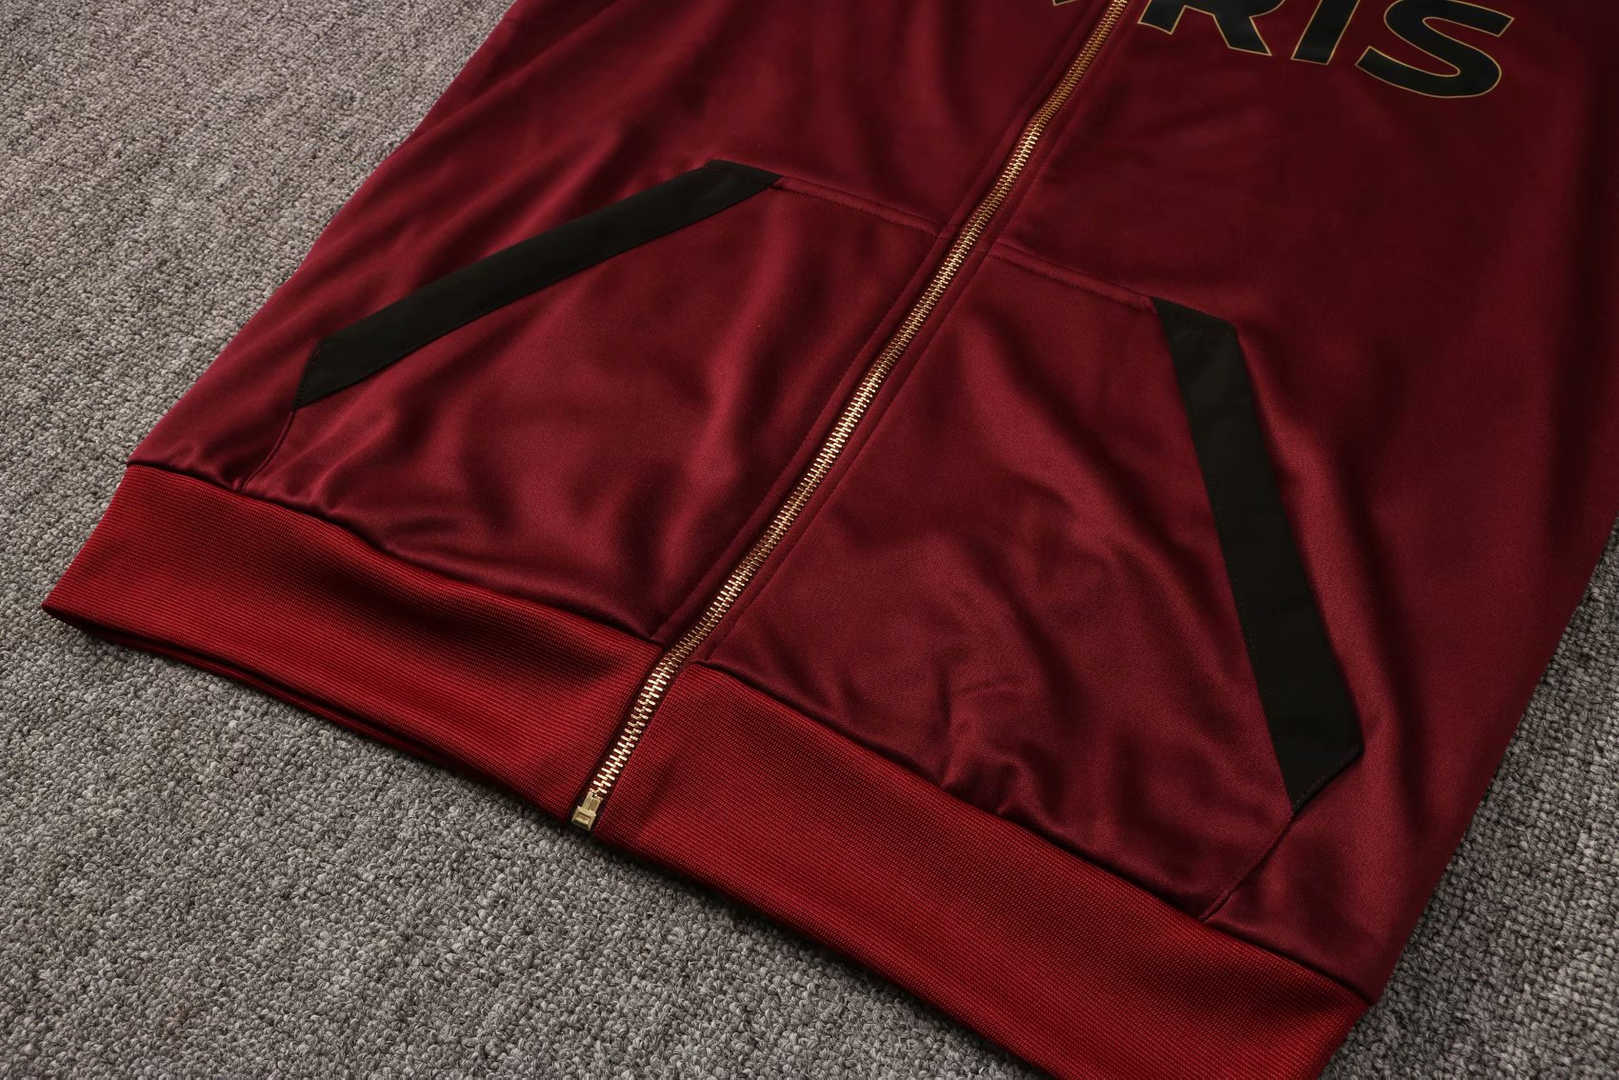 20/21 PSG x Jordan Hoodie Burgundy Soccer Training Suit (Jacket + Pants) Men's 